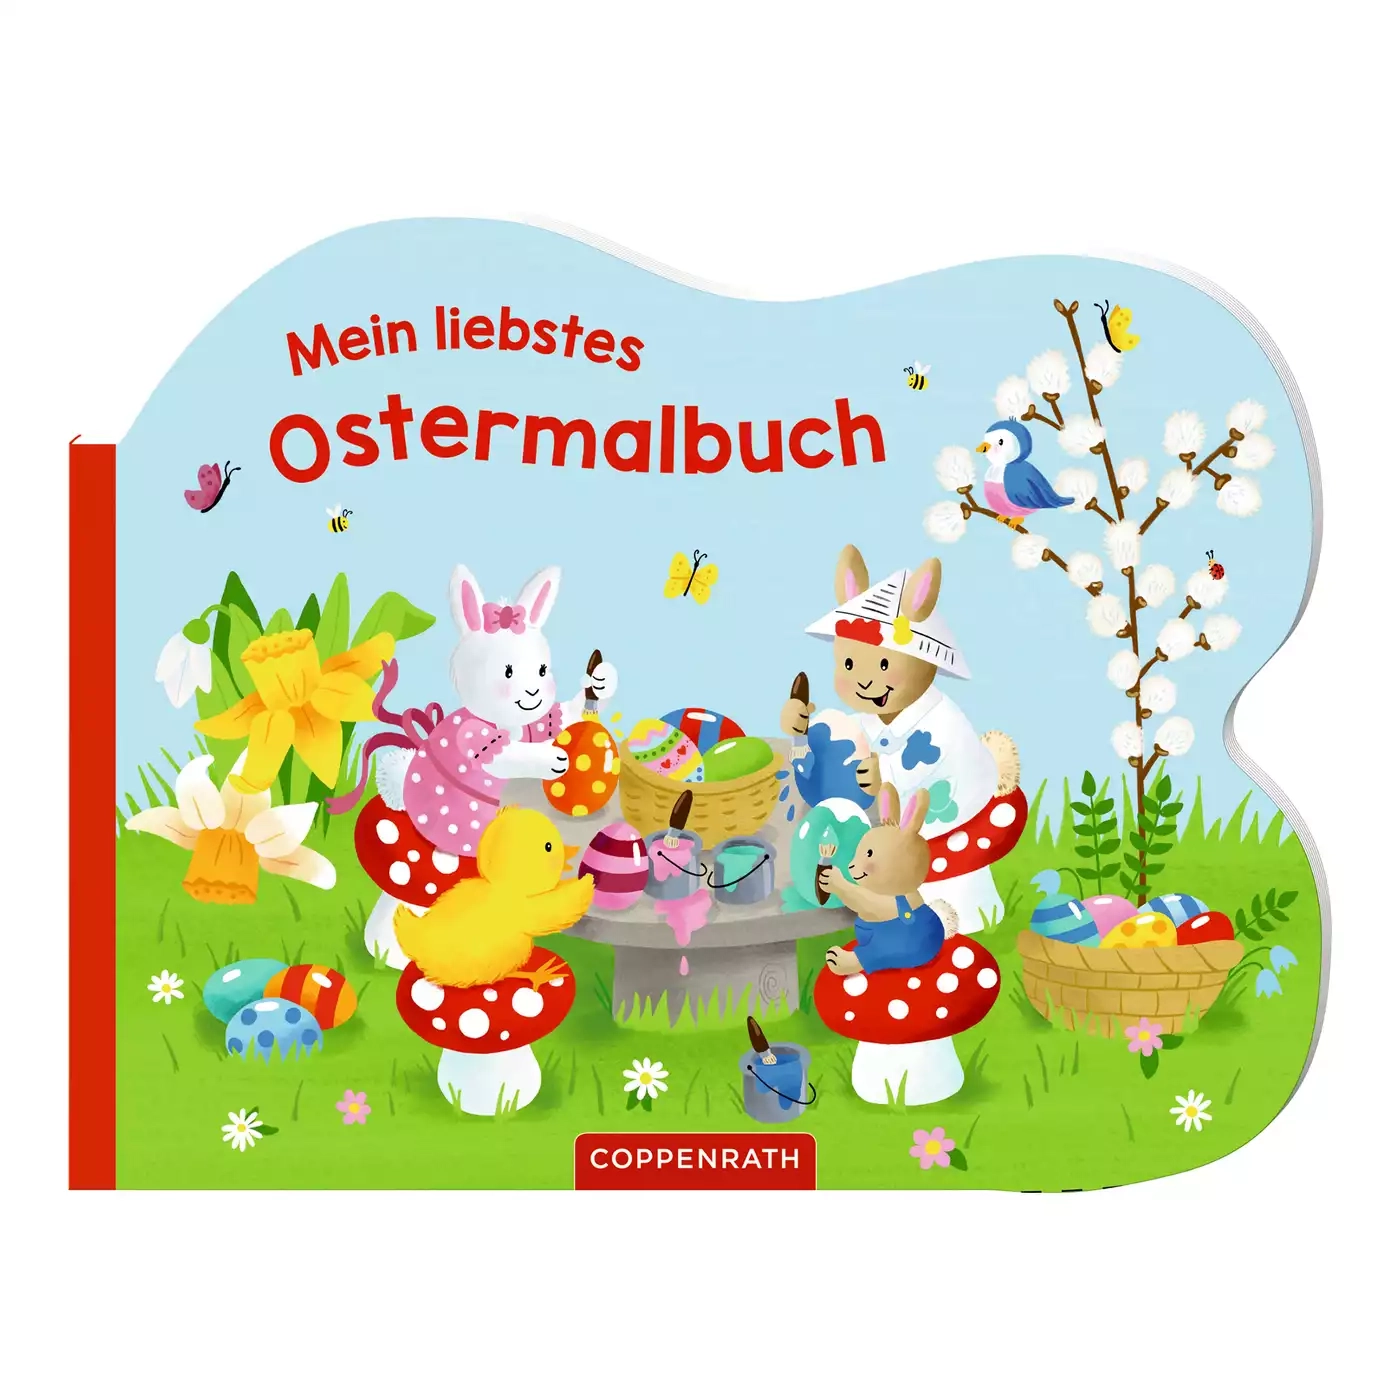 Mein liebstes Ostermalbuch COPPENRATH 2000580240306 3